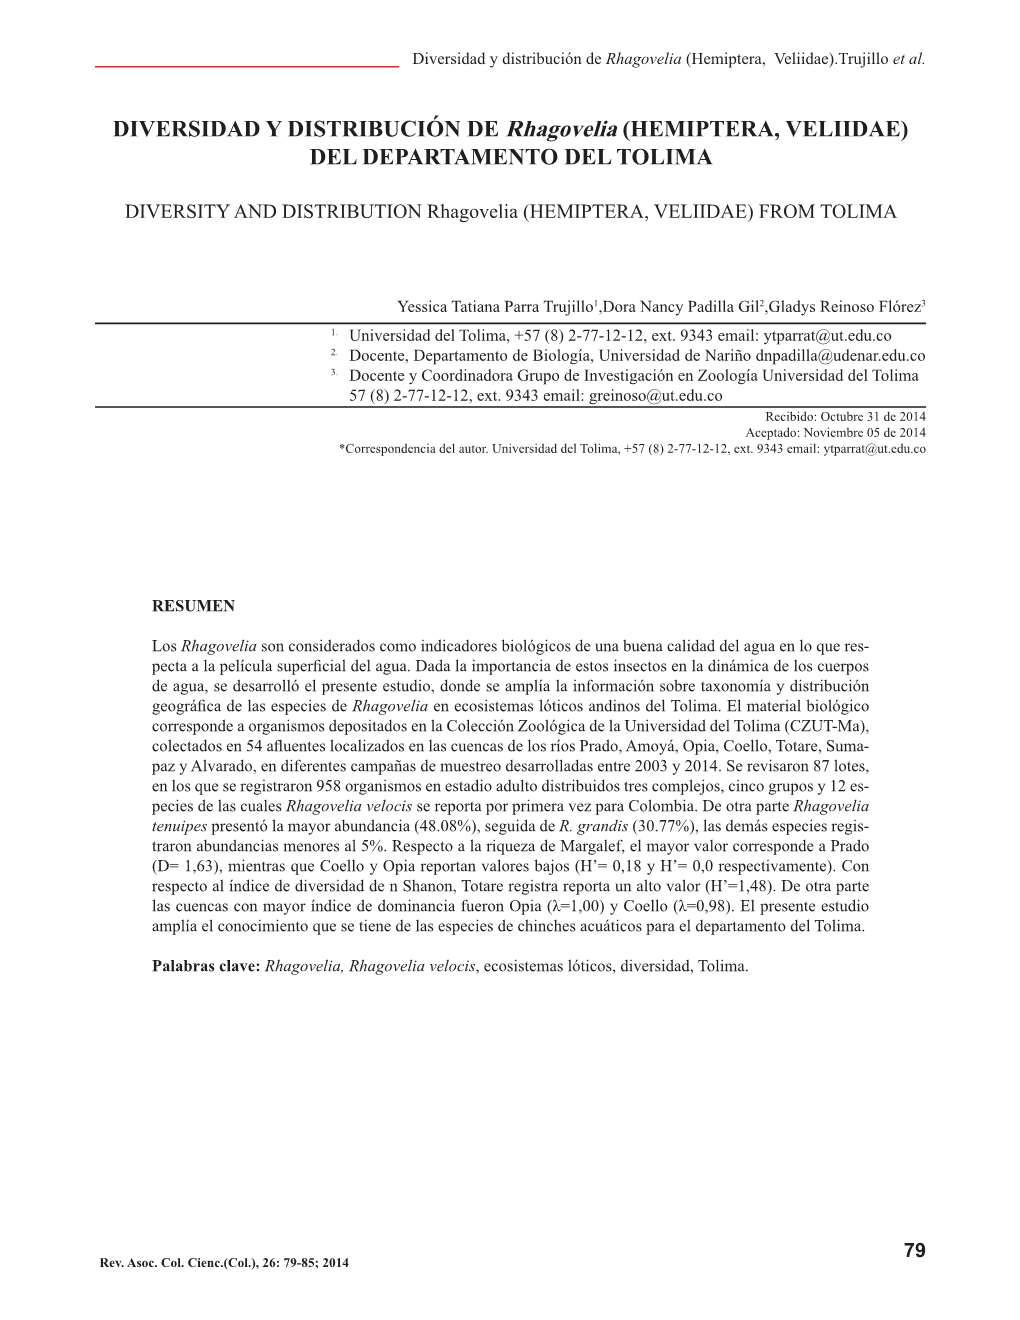 Diversidad Y Distribución De Rhagovelia (Hemiptera, Veliidae).Trujillo Et Al